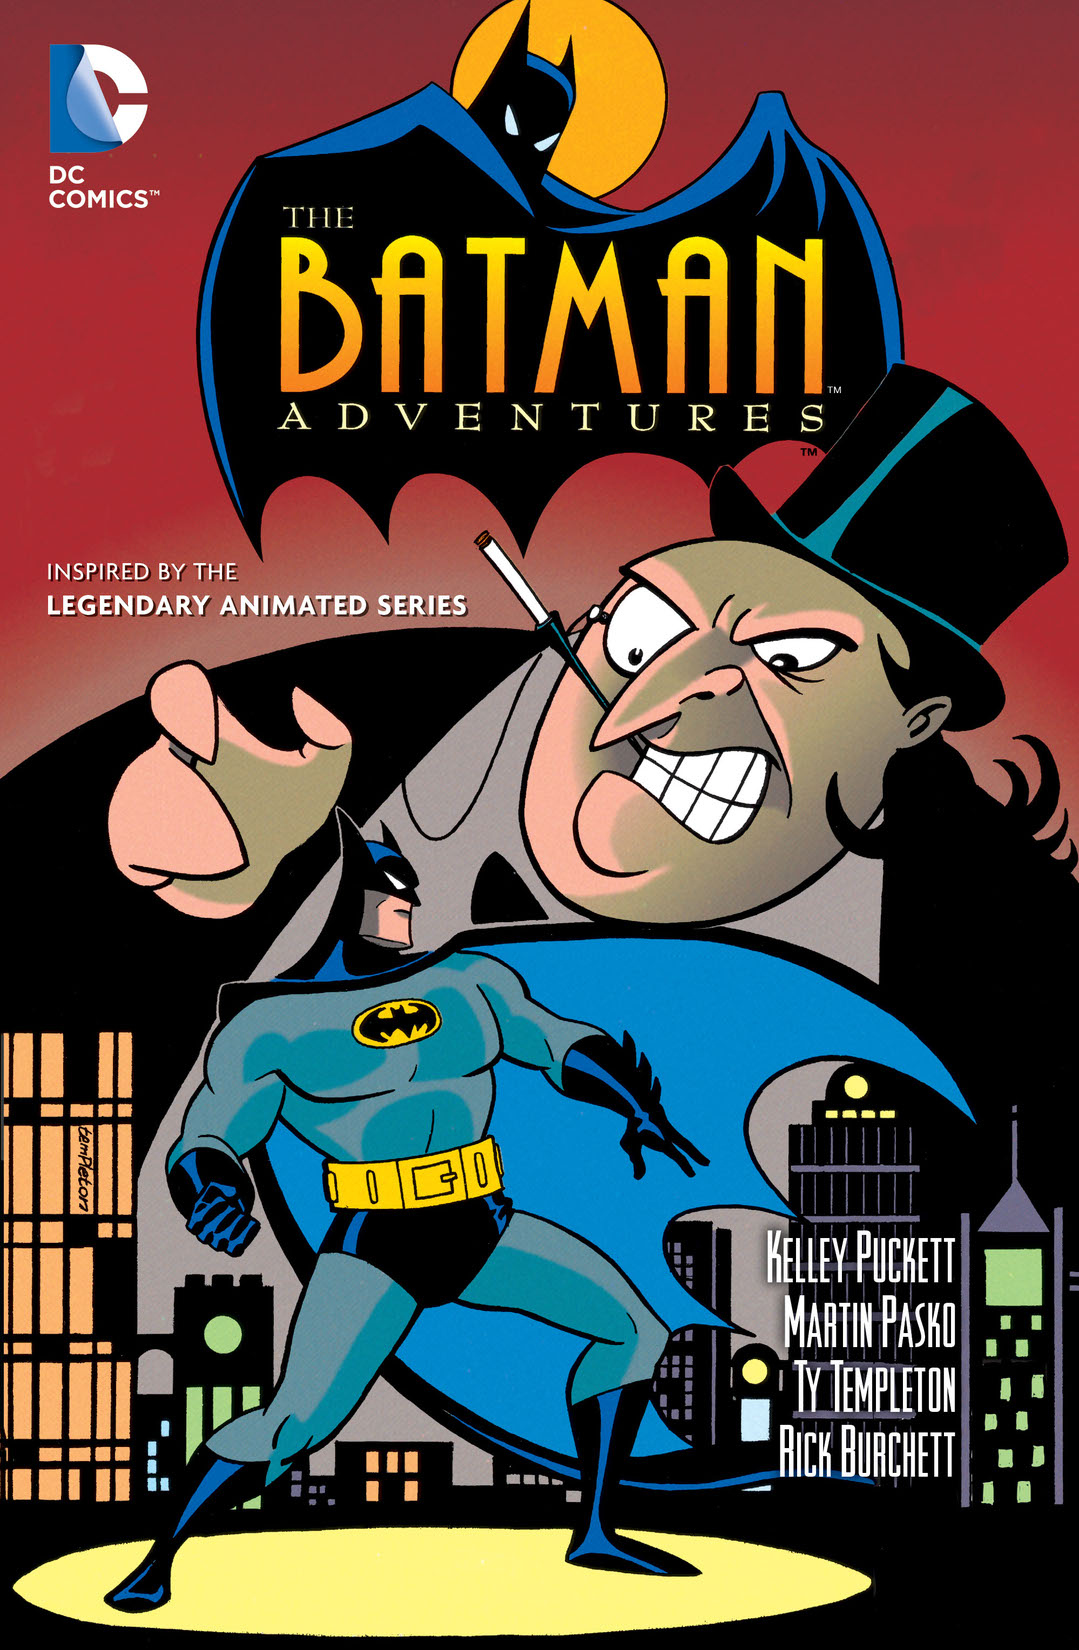 Batman Adventures Vol. 1 preview images